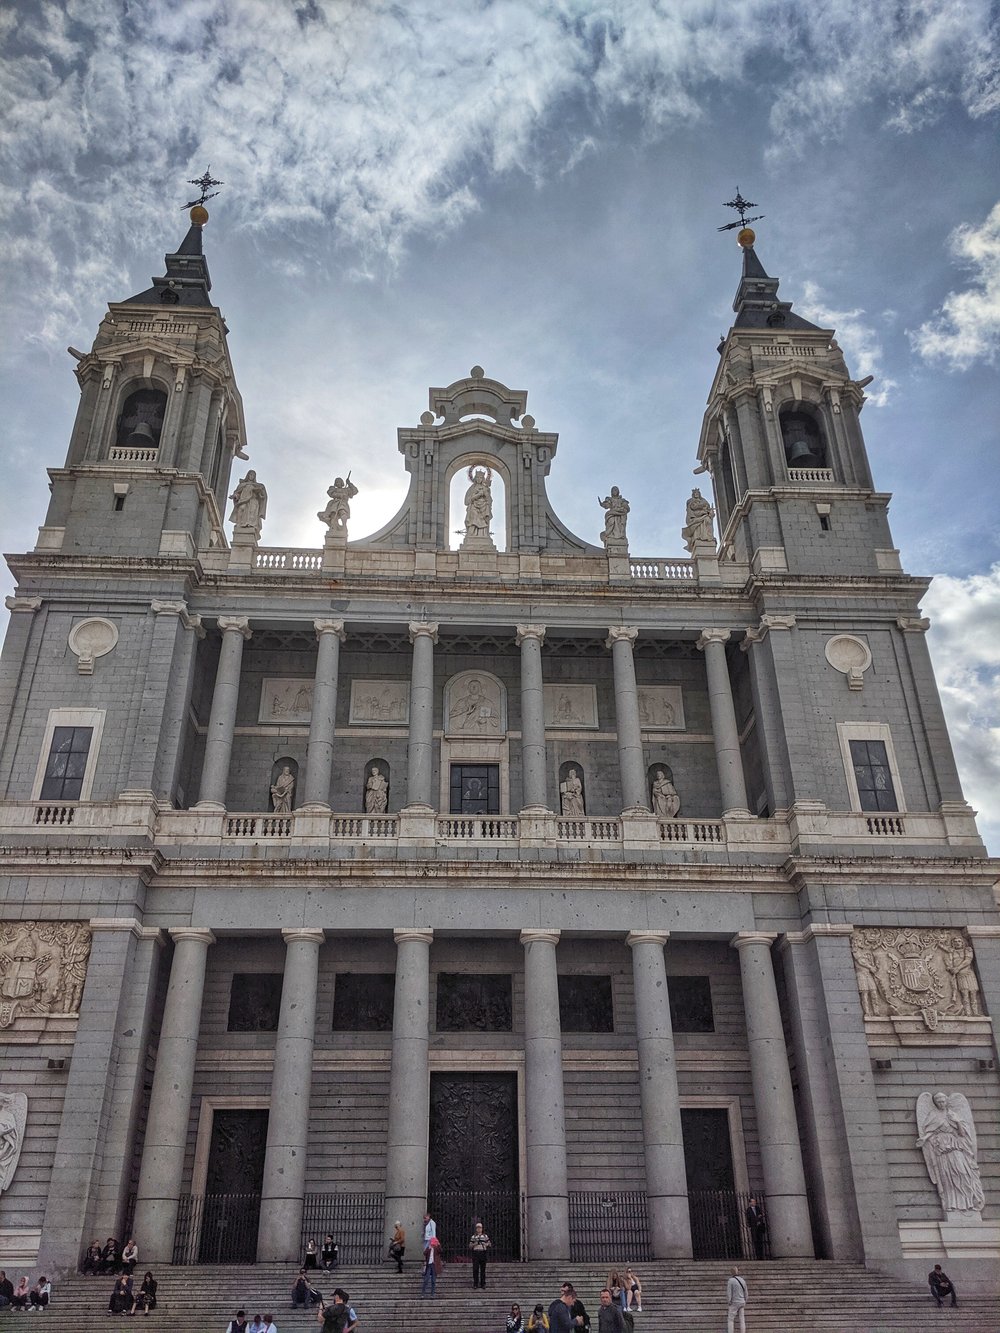 Cathedral de Santa Maria - Madrid, Spain